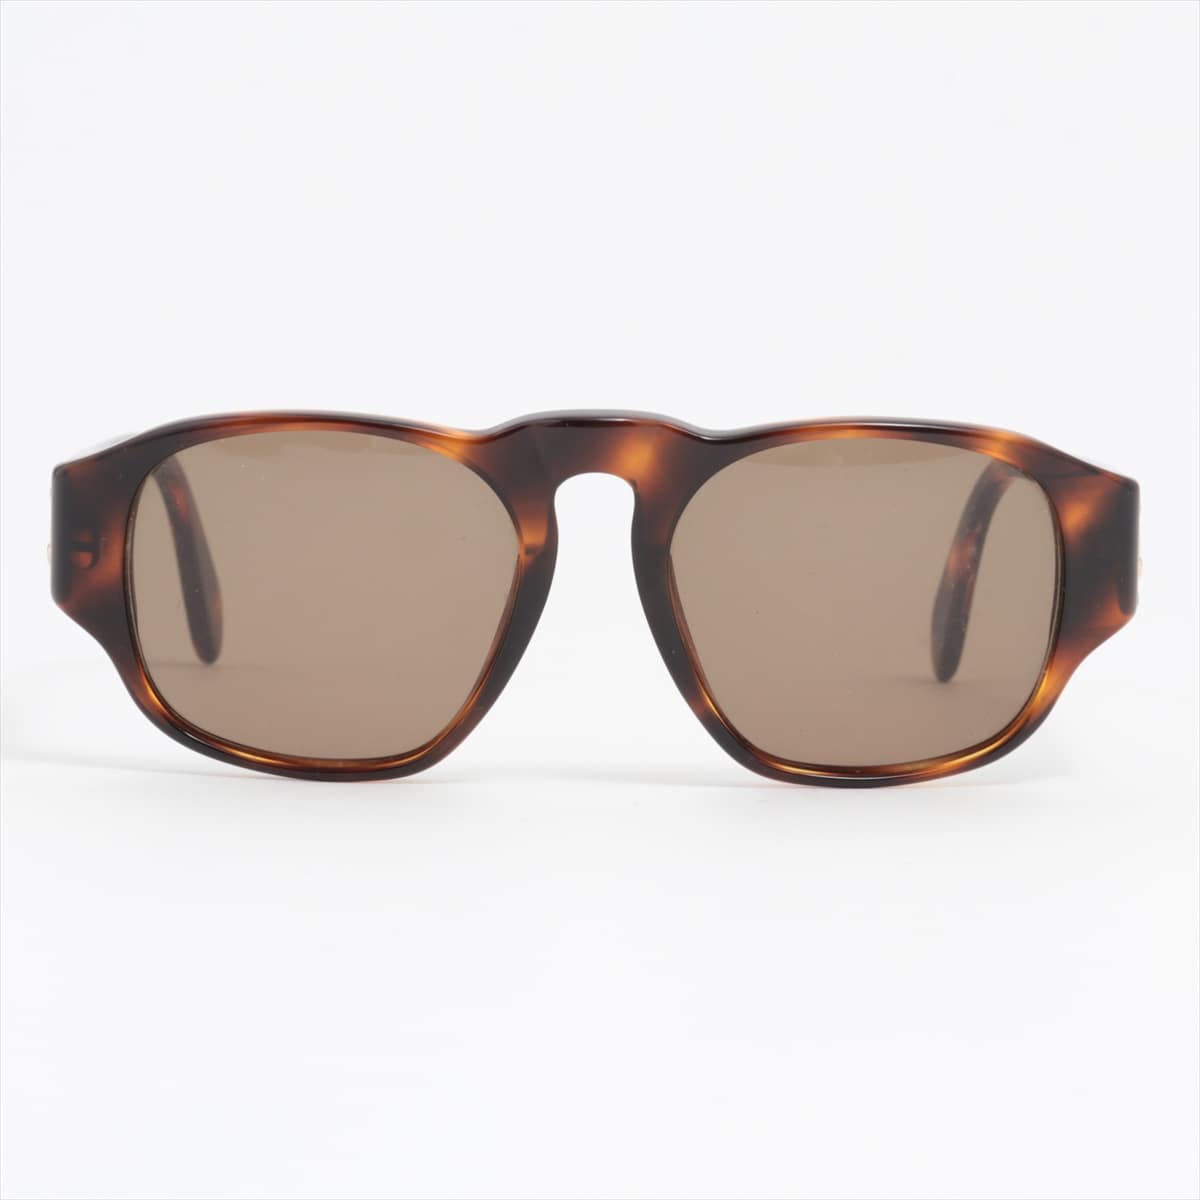 Chanel 01452 91235 Coco Mark Sunglasses Plastic Brown